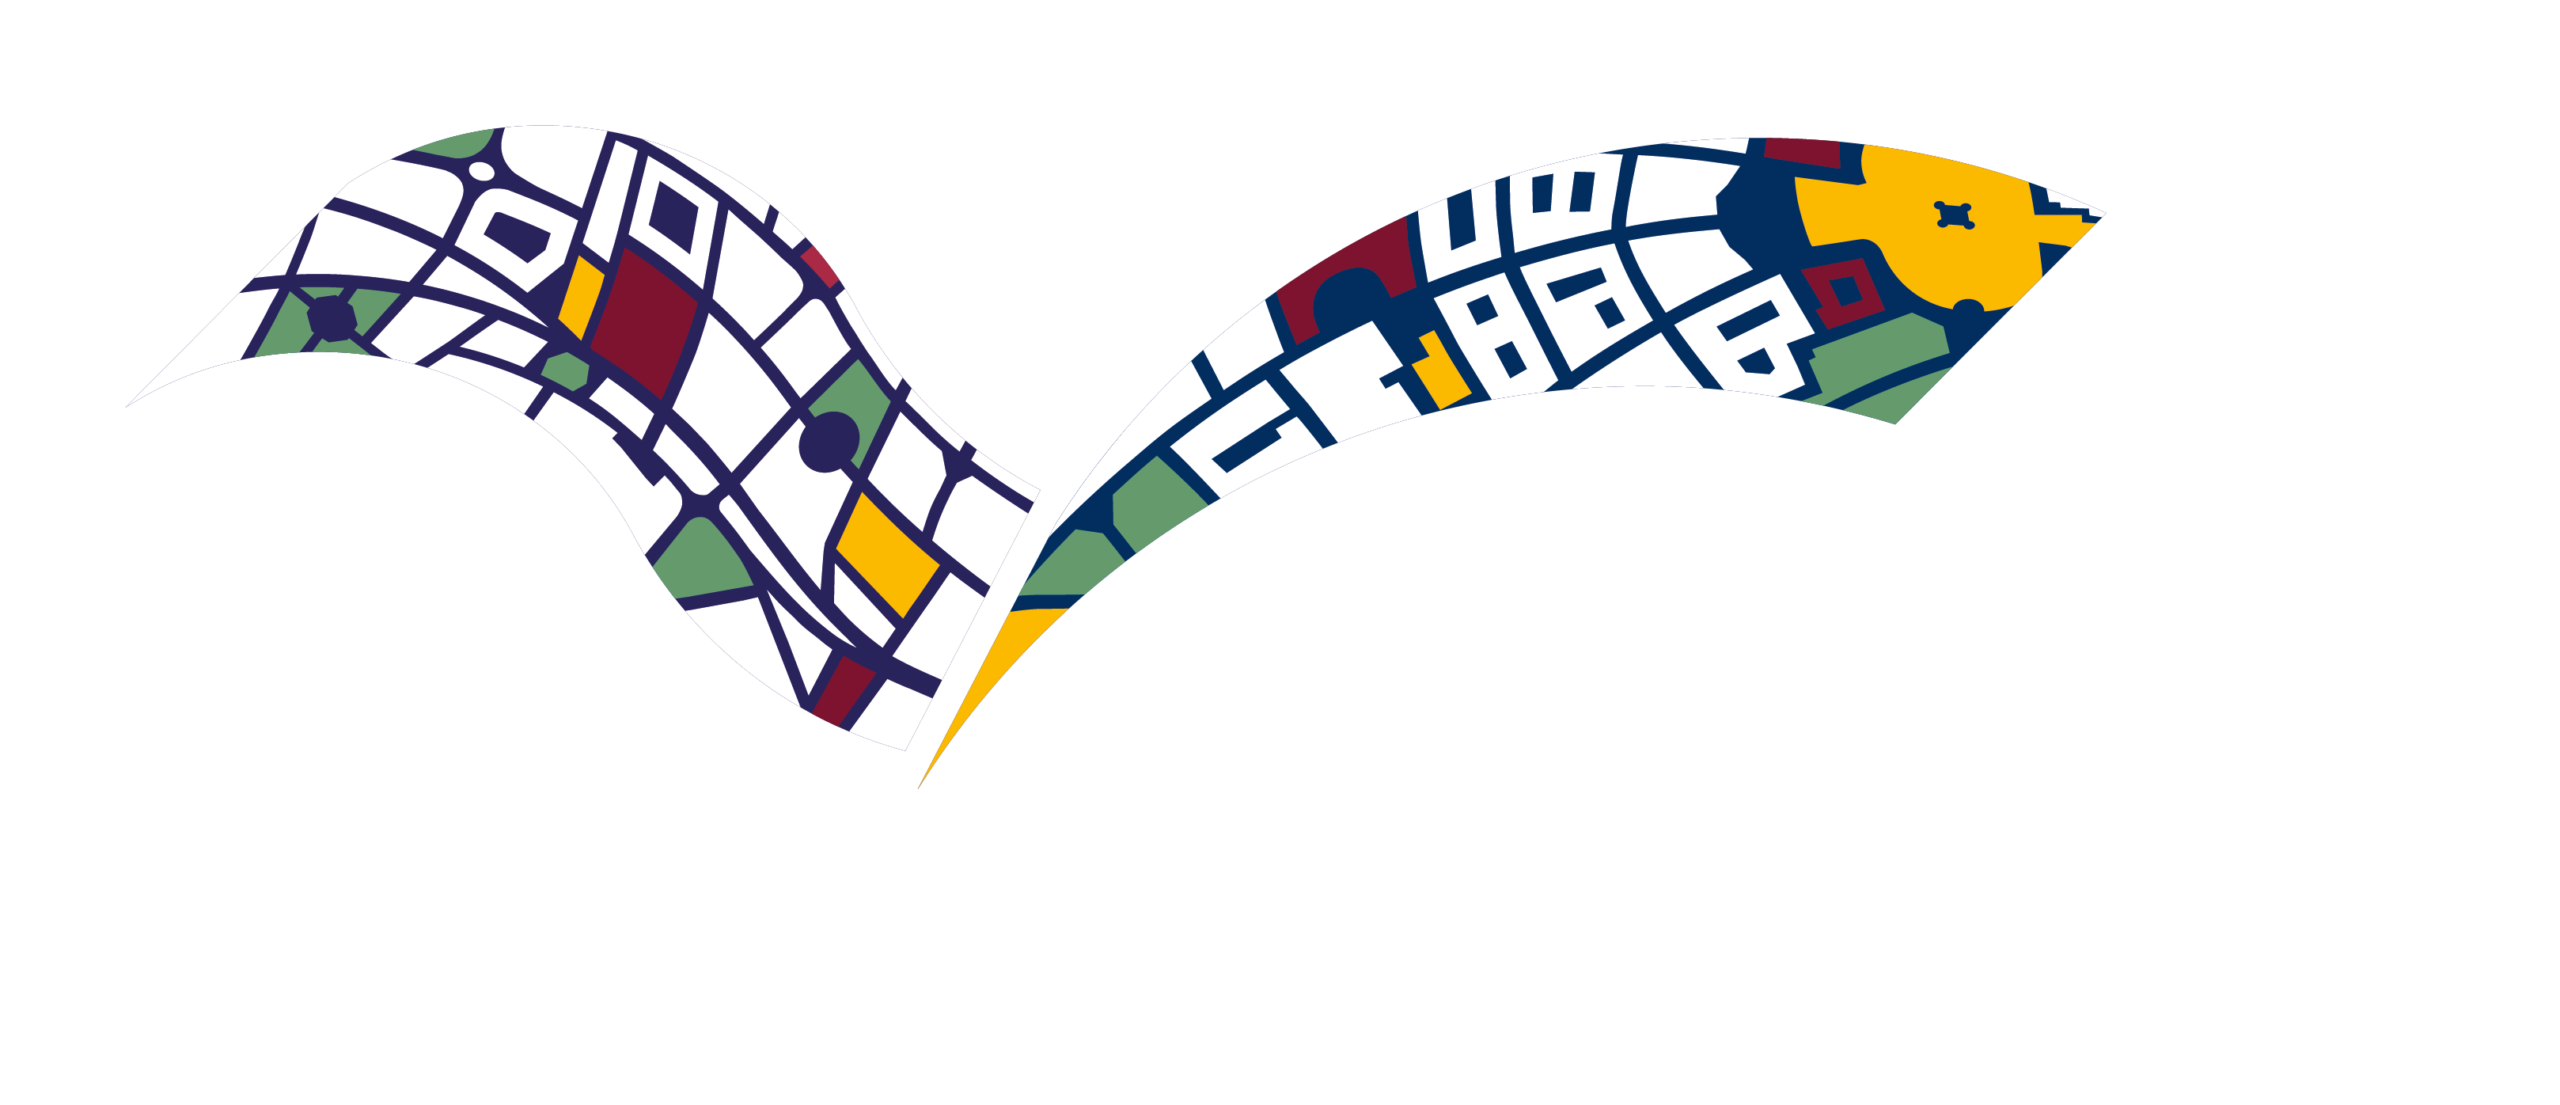 Featured image: L’Origine di Sistema Città